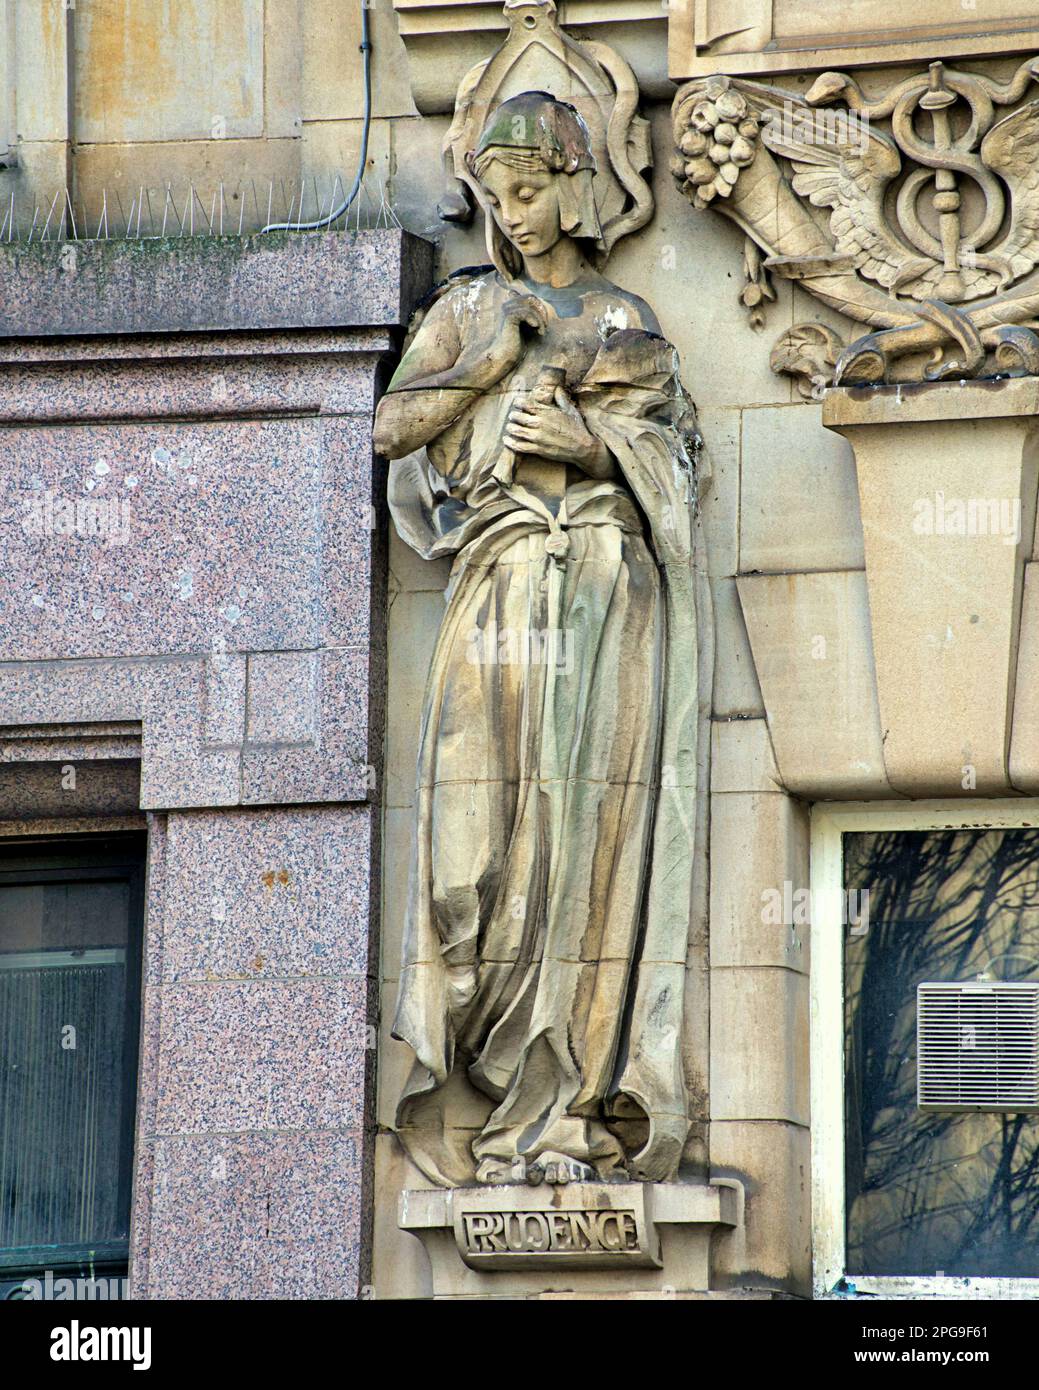 Eine von vier Skulpturen der Allegorien das Allegory of Prudence von Phyllis Archibald auf einem alten Bankgebäude am St. enoch Square in Glasgow, Großbritannien Stockfoto